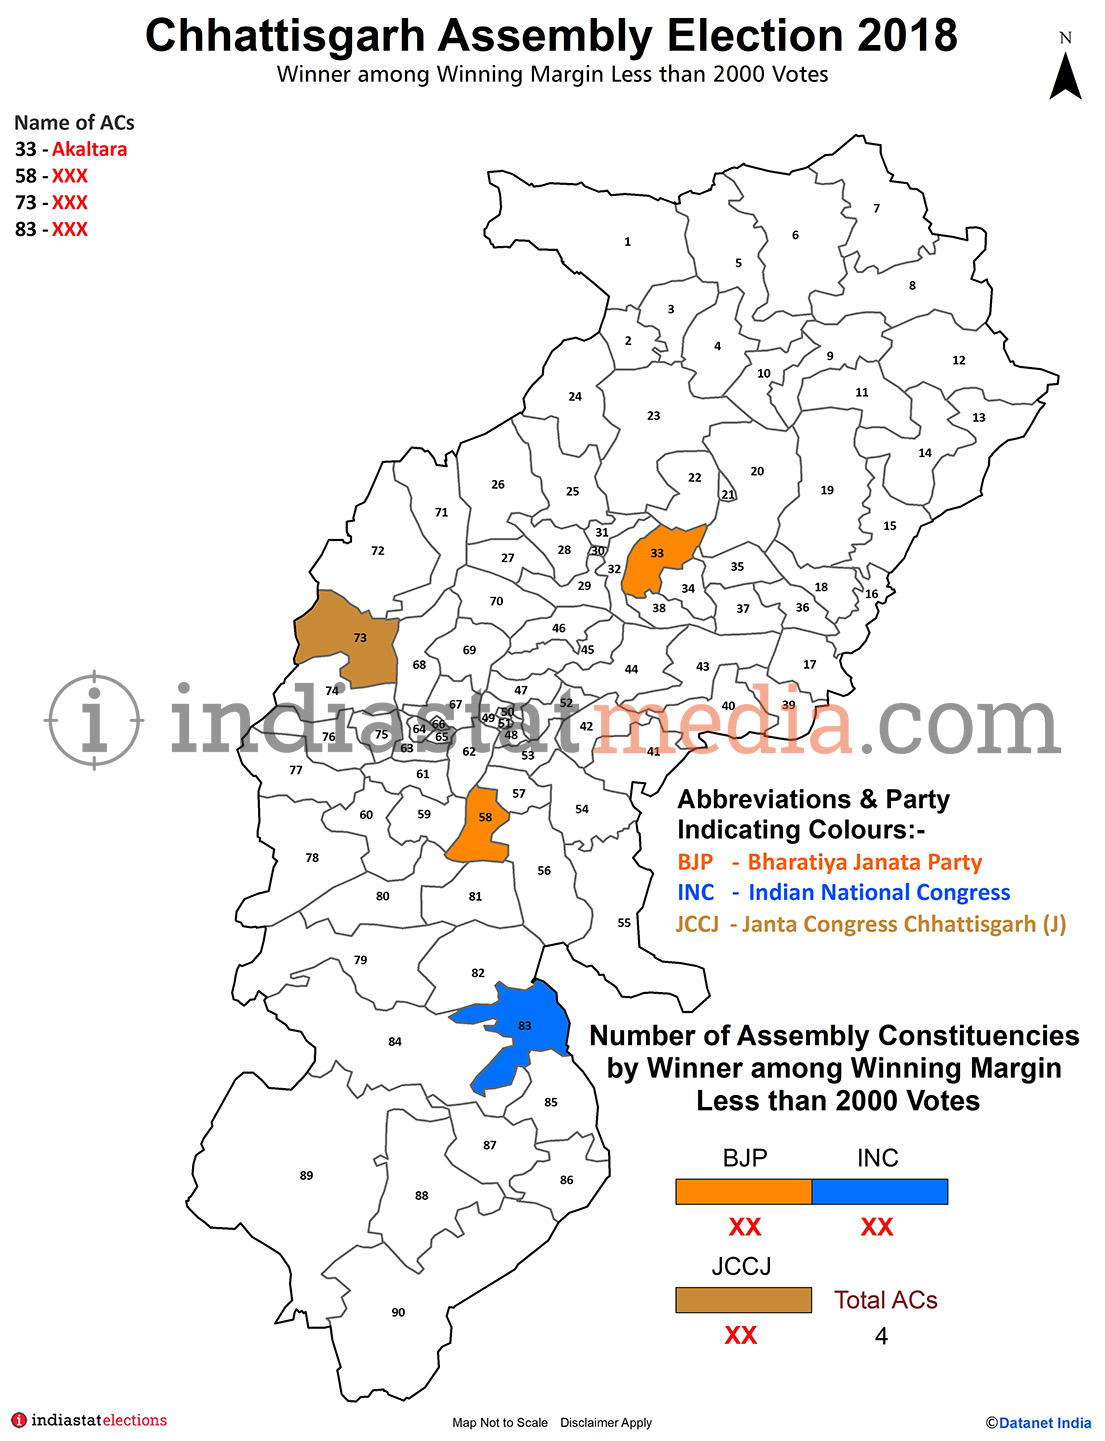 Winner among Winning Margin Less than 2000 Votes in Chhattisgarh (Assembly Election - 2018)